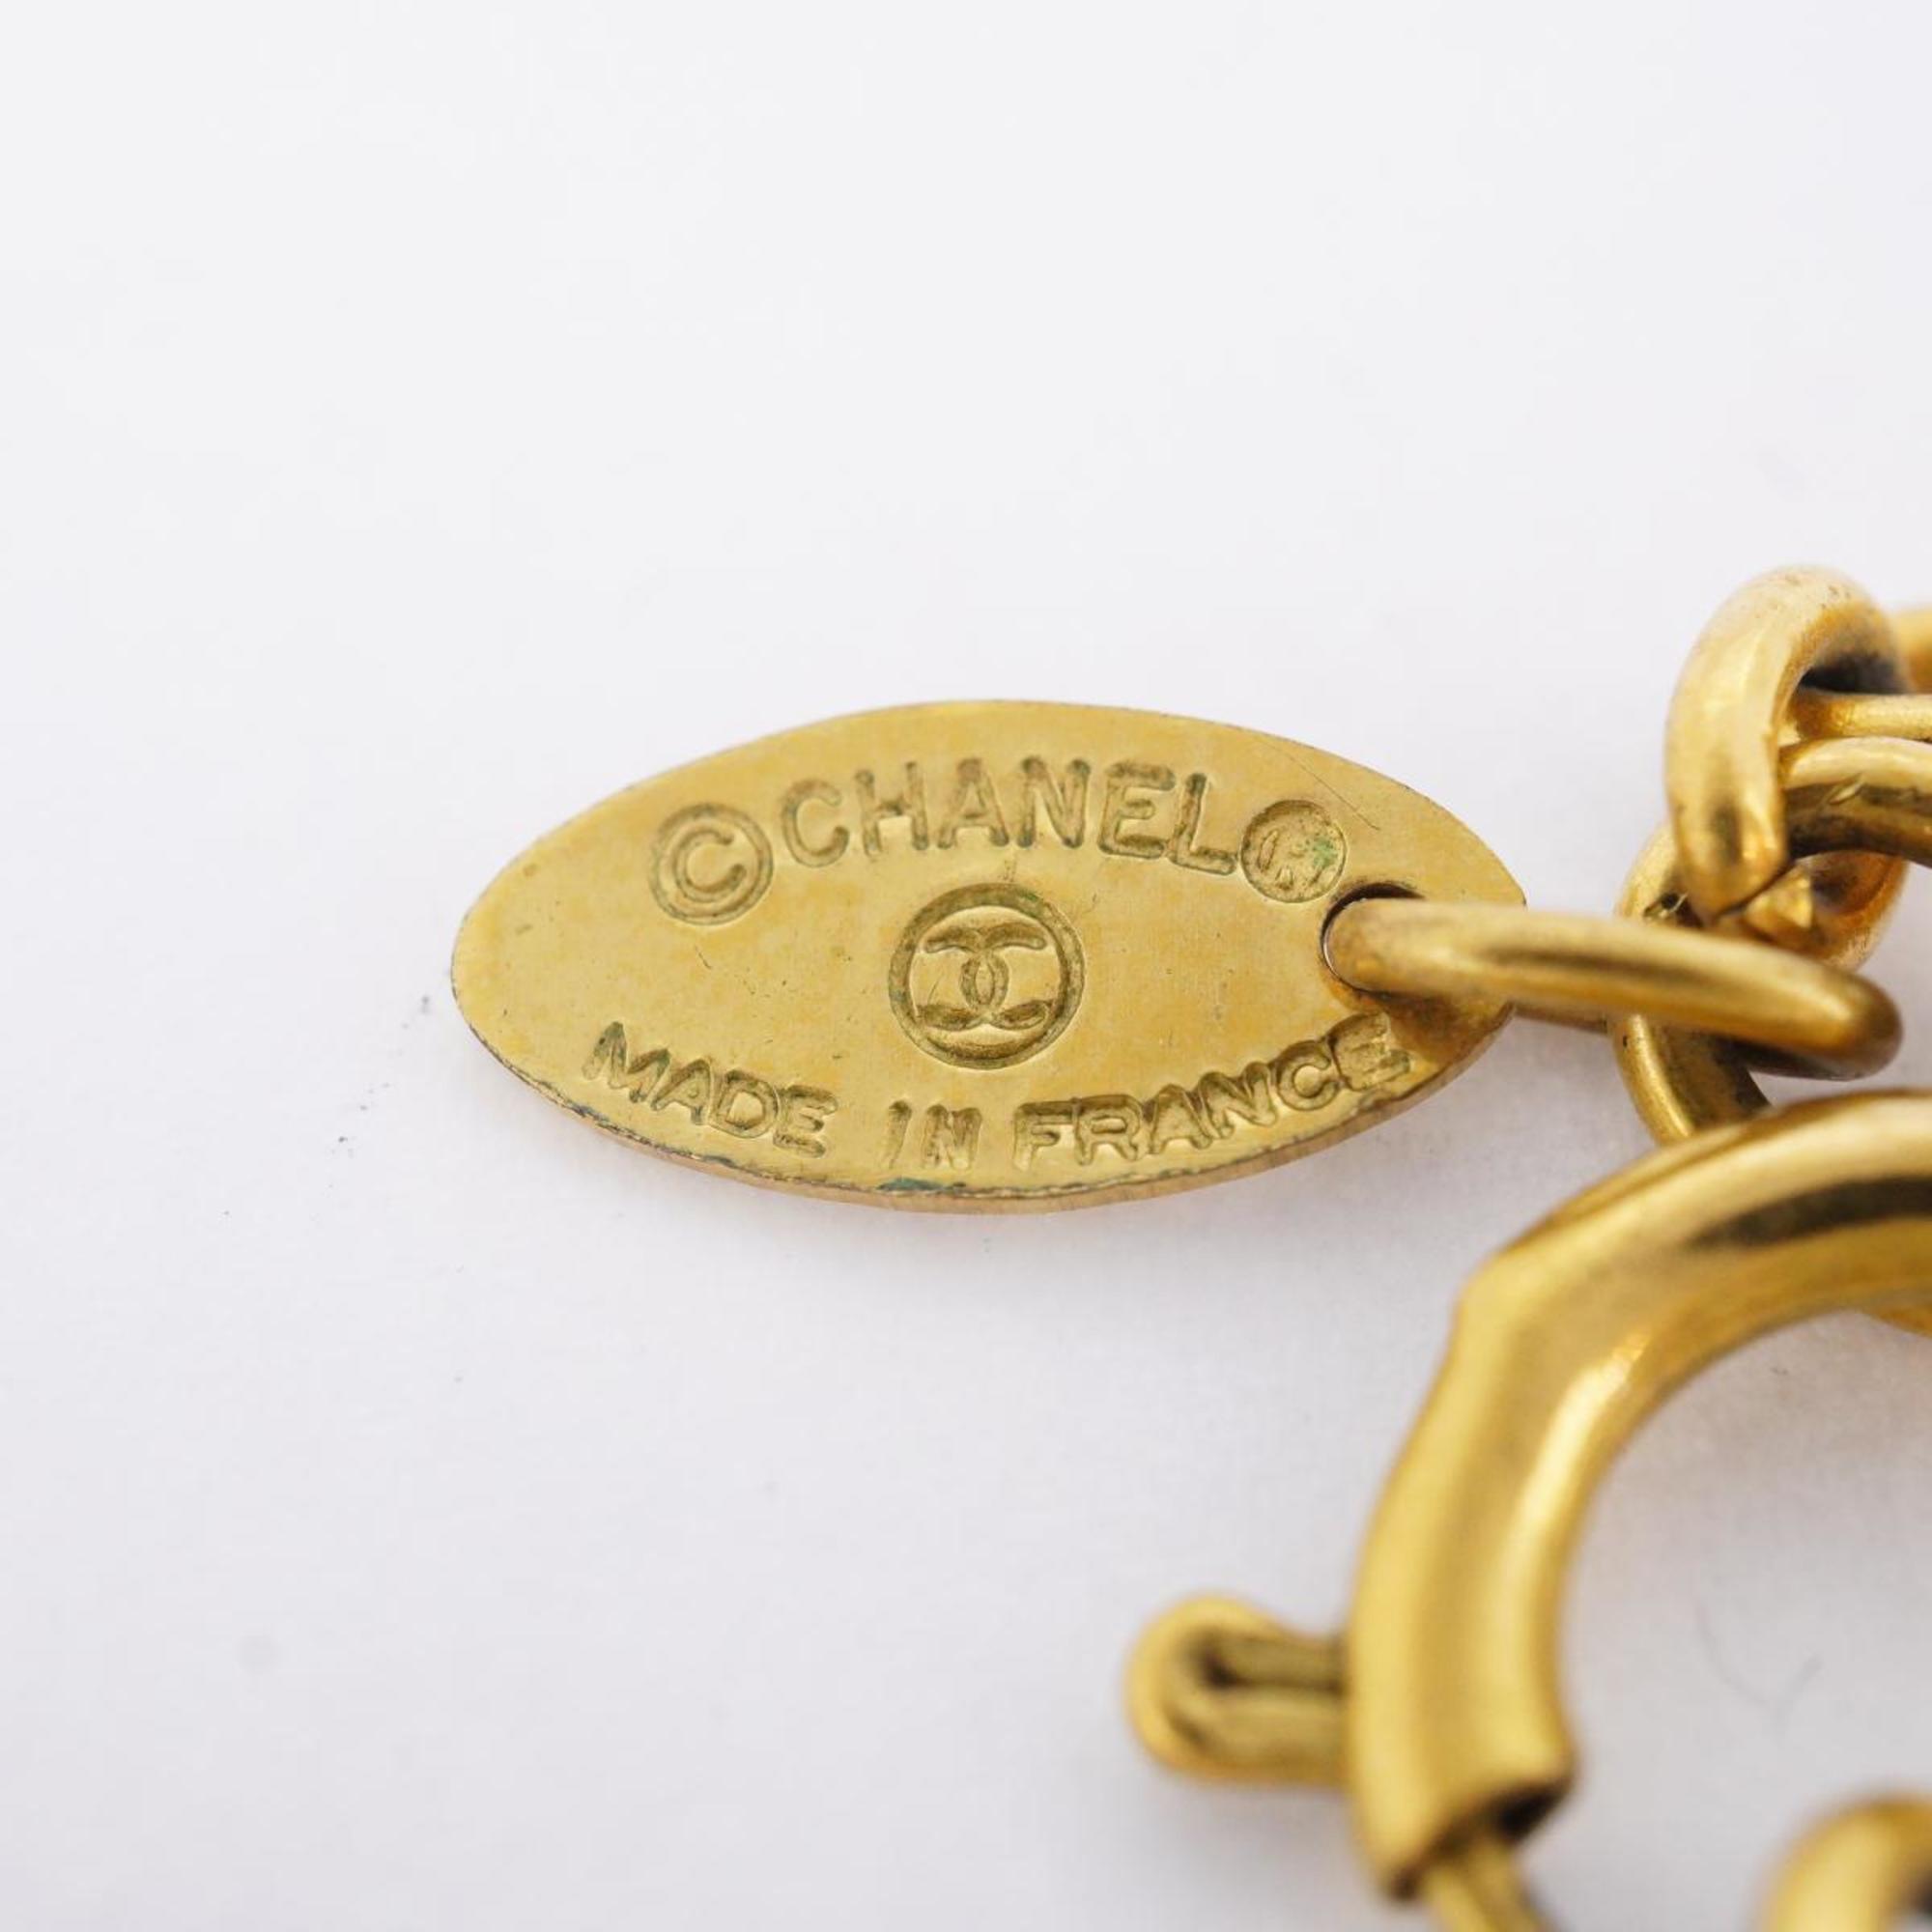 シャネル(Chanel) シャネル ネックレス  ココマーク  サークル GPメッキ ゴールド  レディース